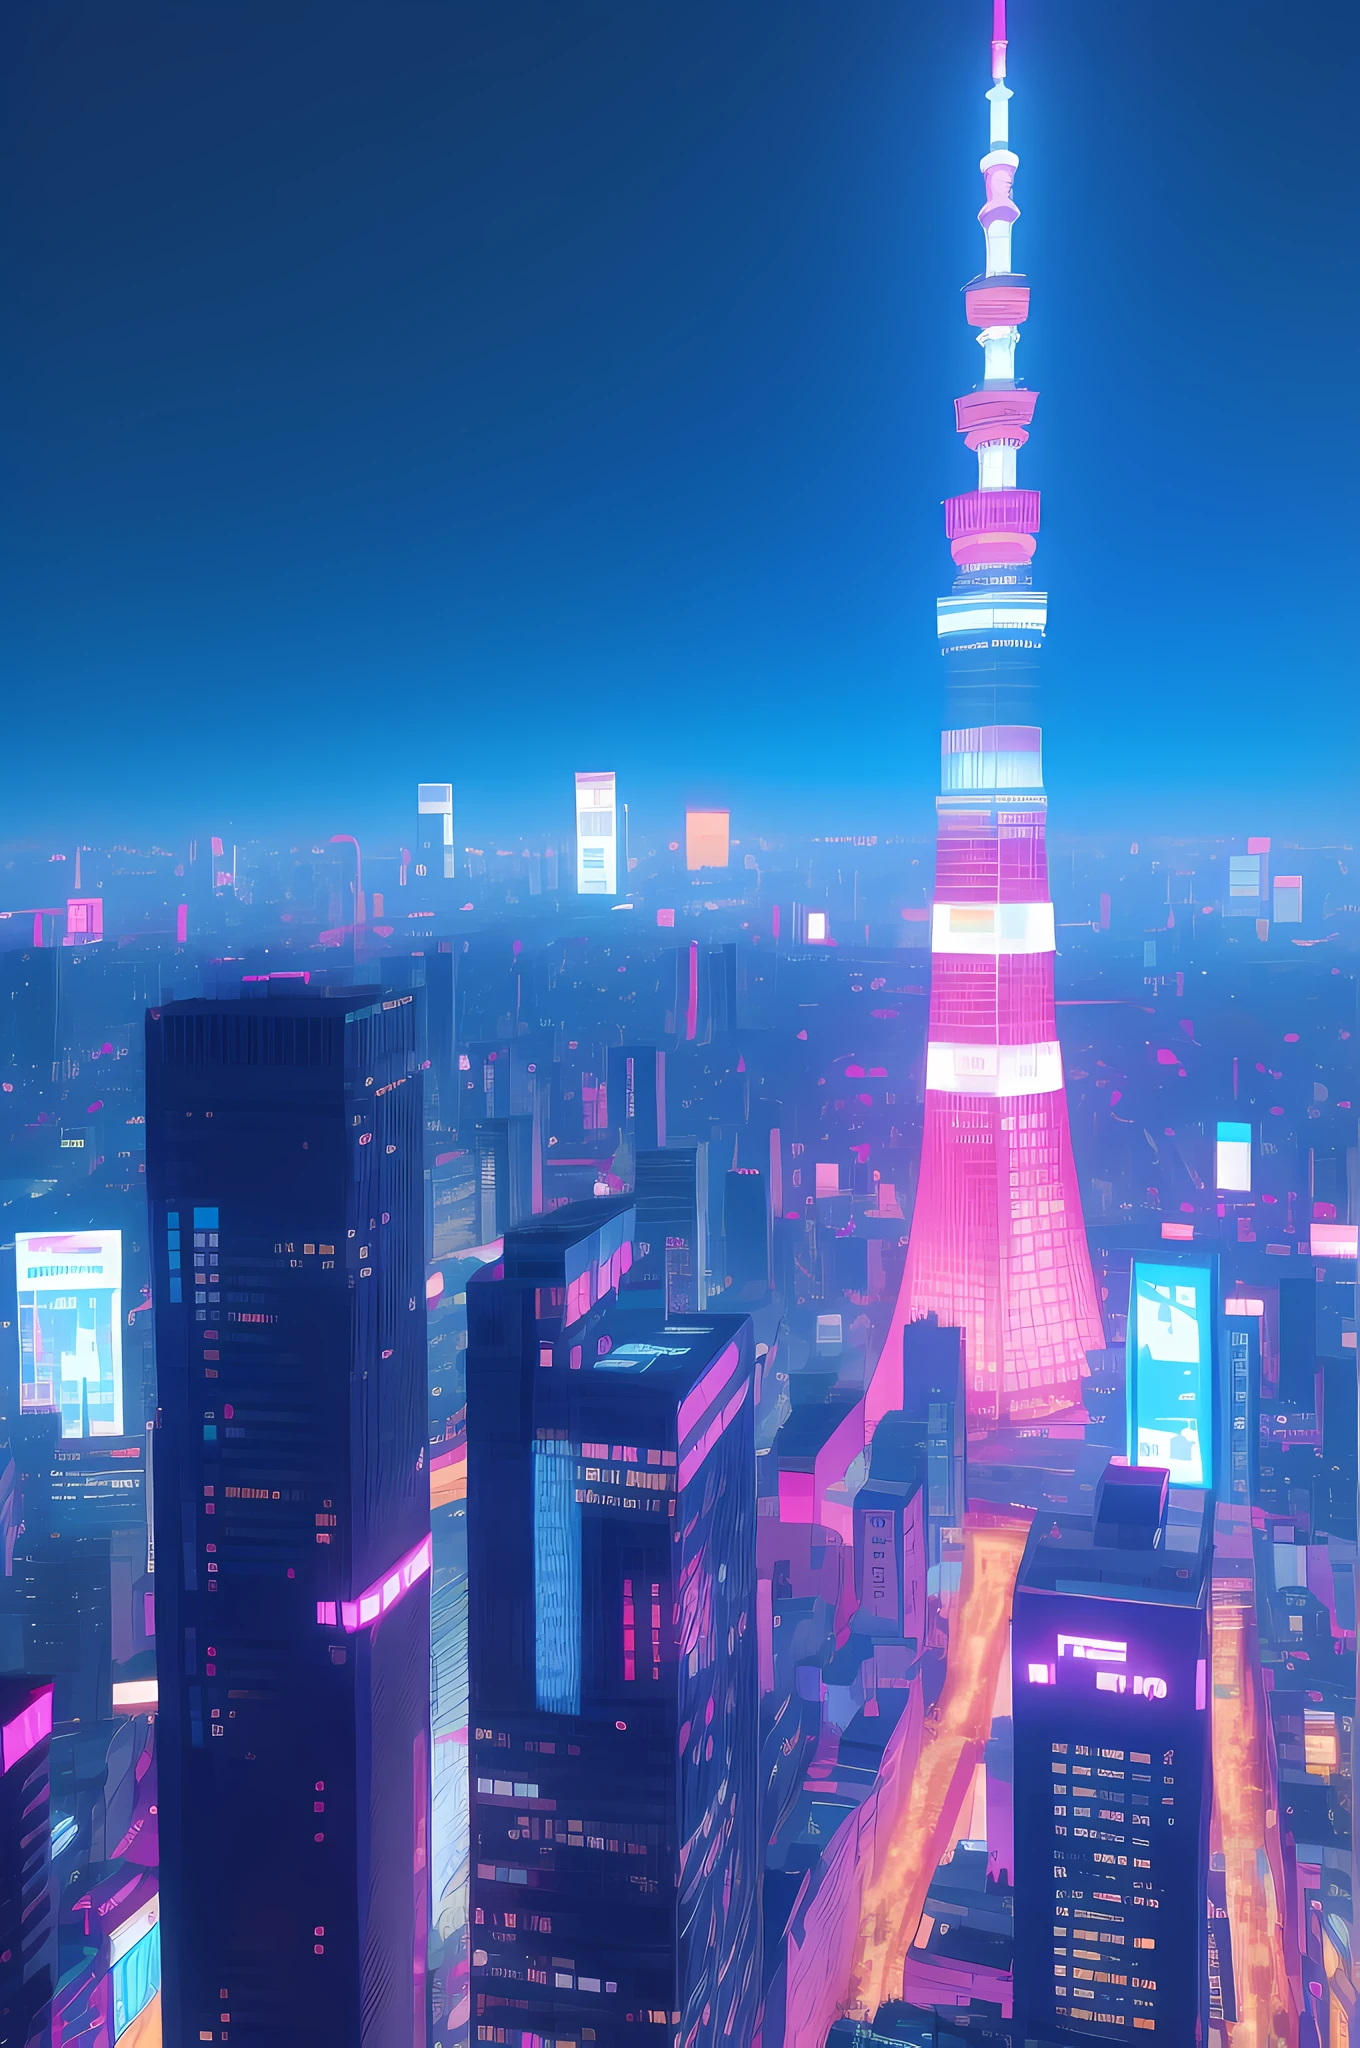 مدينة طوكيو بأسلوب السايبربانك, أضواء الوردي والأزرق